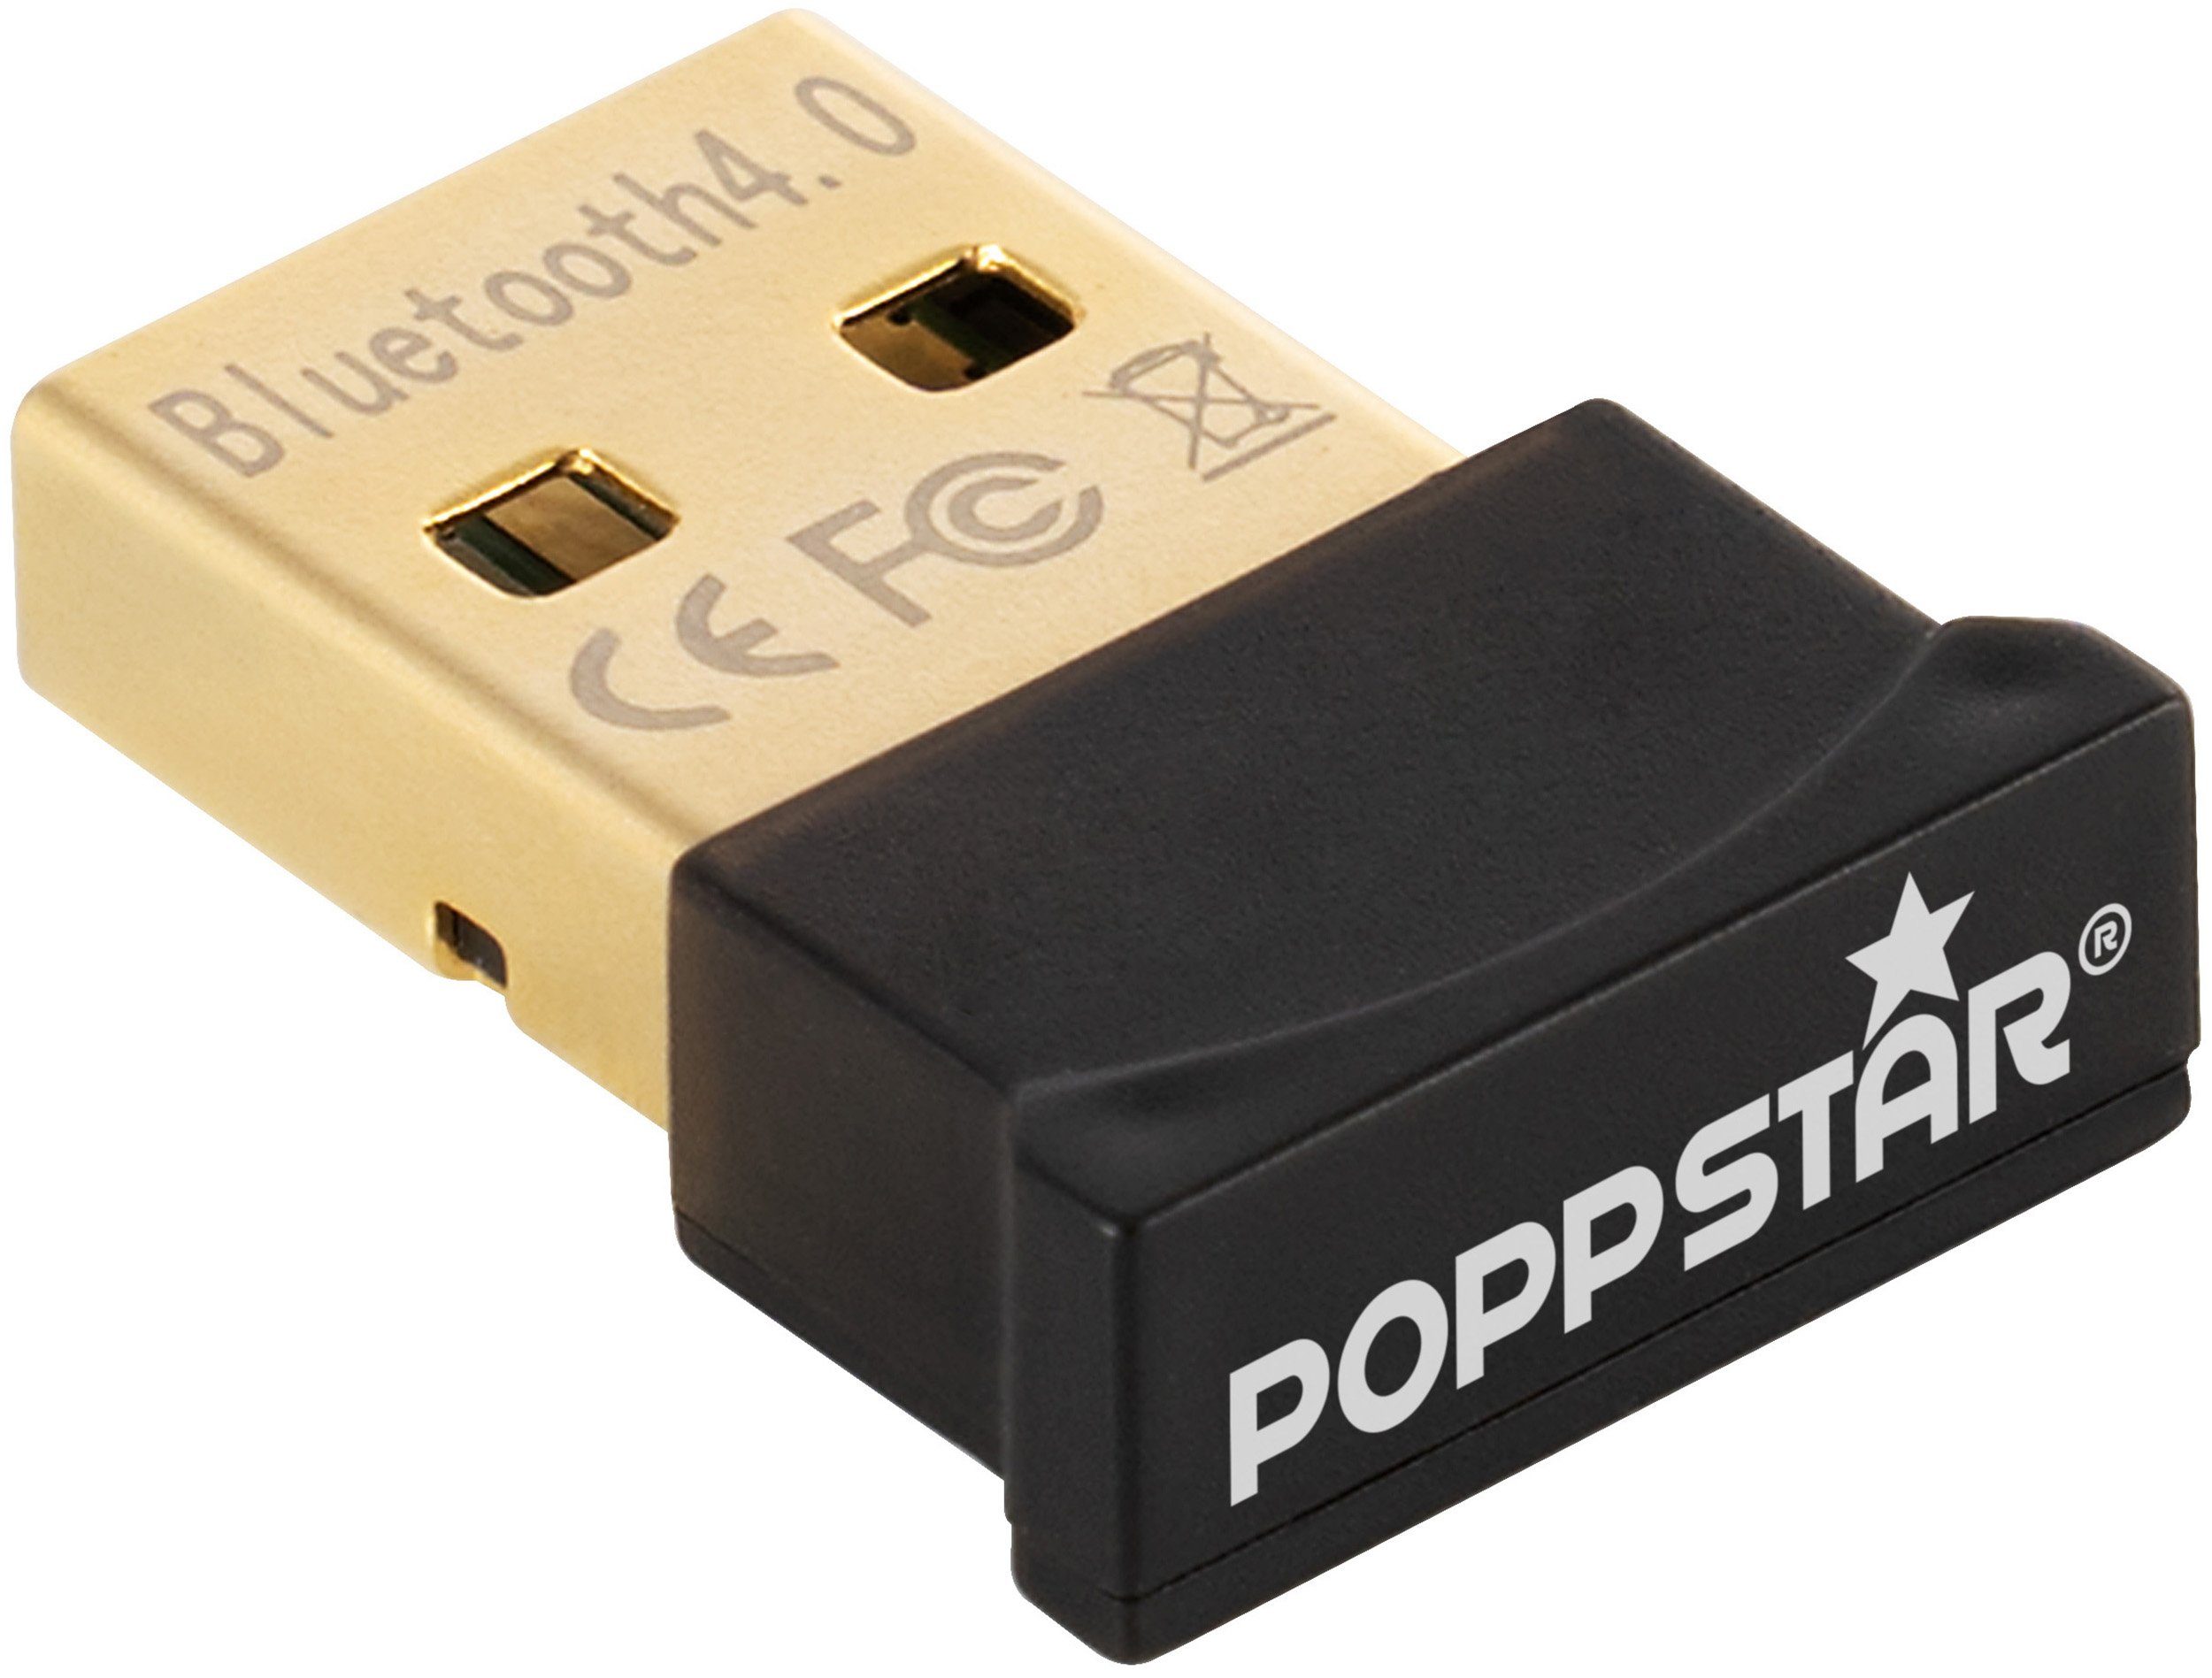 Poppstar USB Bluetooth 4.0 Adapter Stick zum Nachrüsten USB